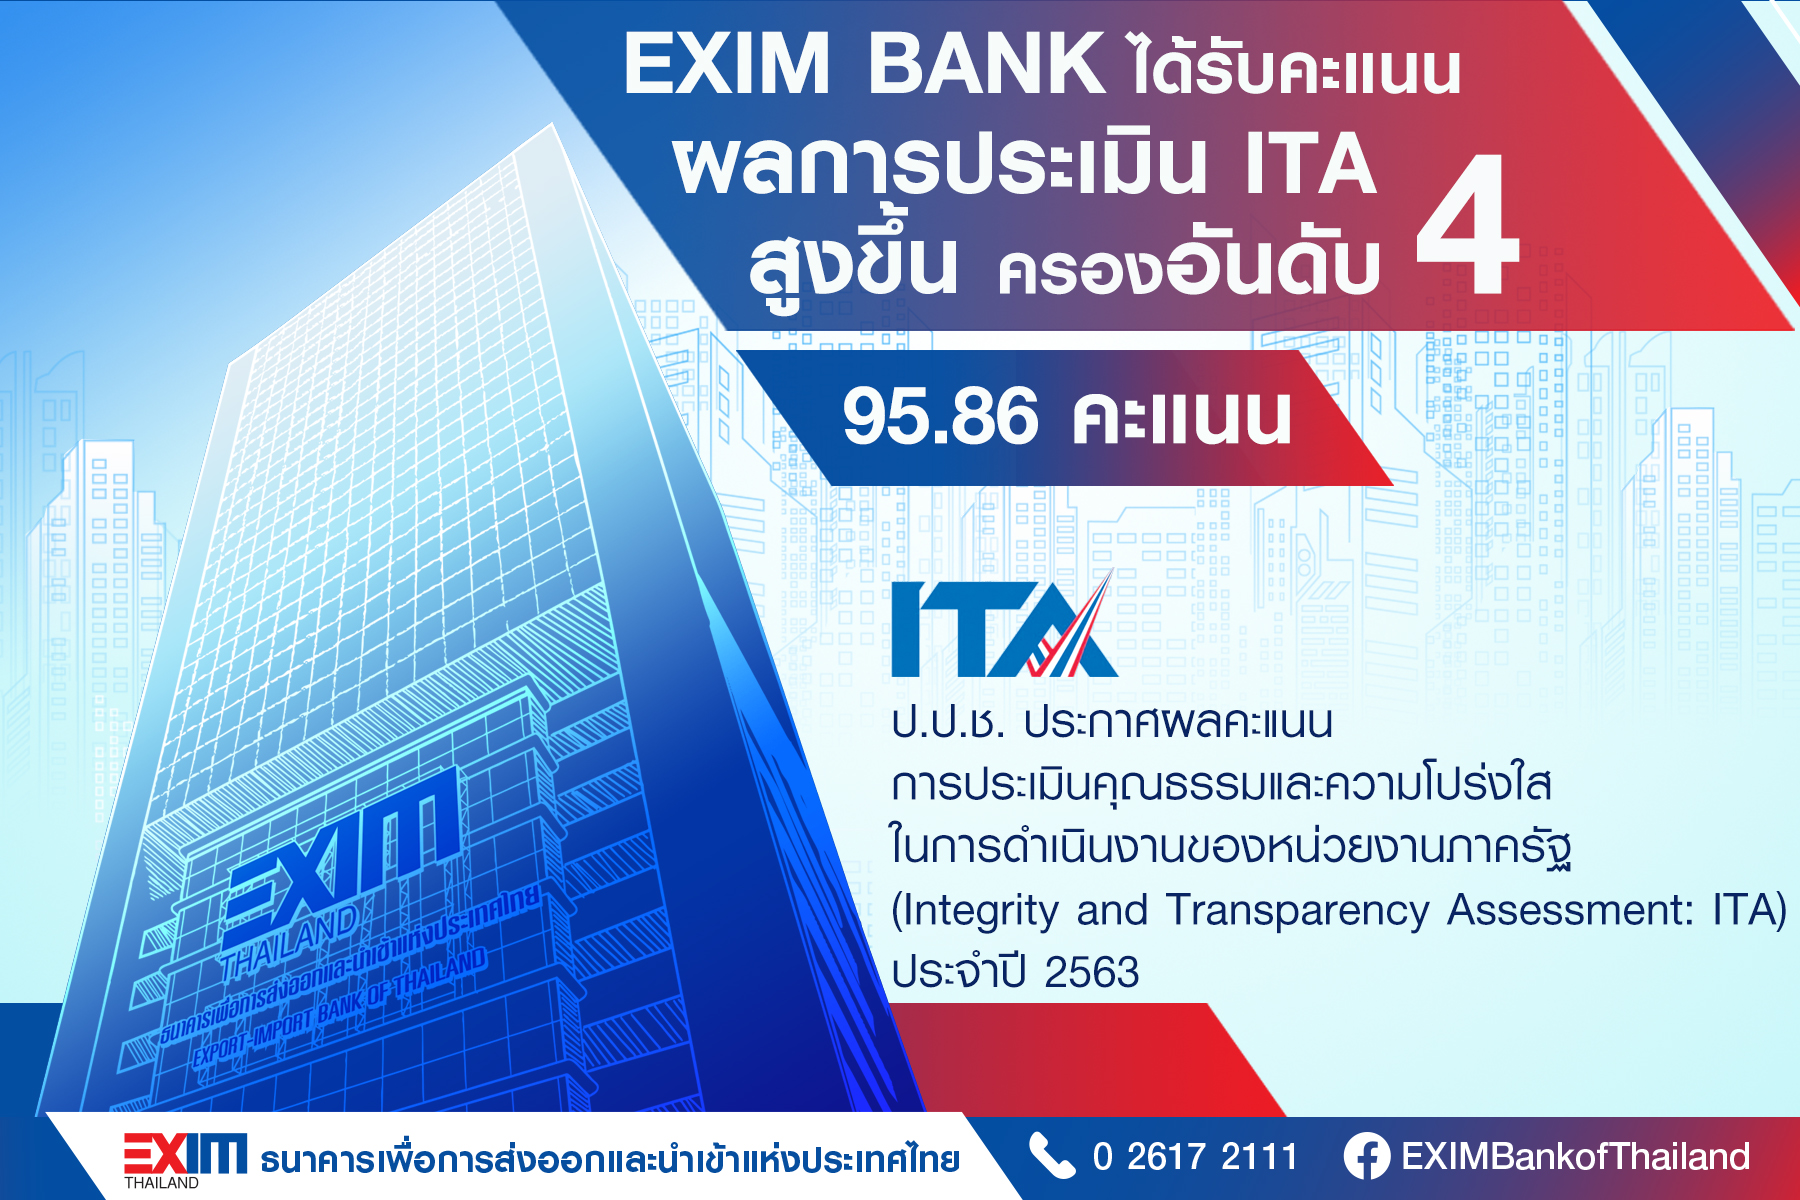 EXIM BANK ได้คะแนนประเมินคุณธรรมและความโปร่งใสในการดำเนินงานของหน่วยงานภาครัฐ (ITA) สูงขึ้นถึงระดับสูงสุด (AA) ครอง อันดับ 4